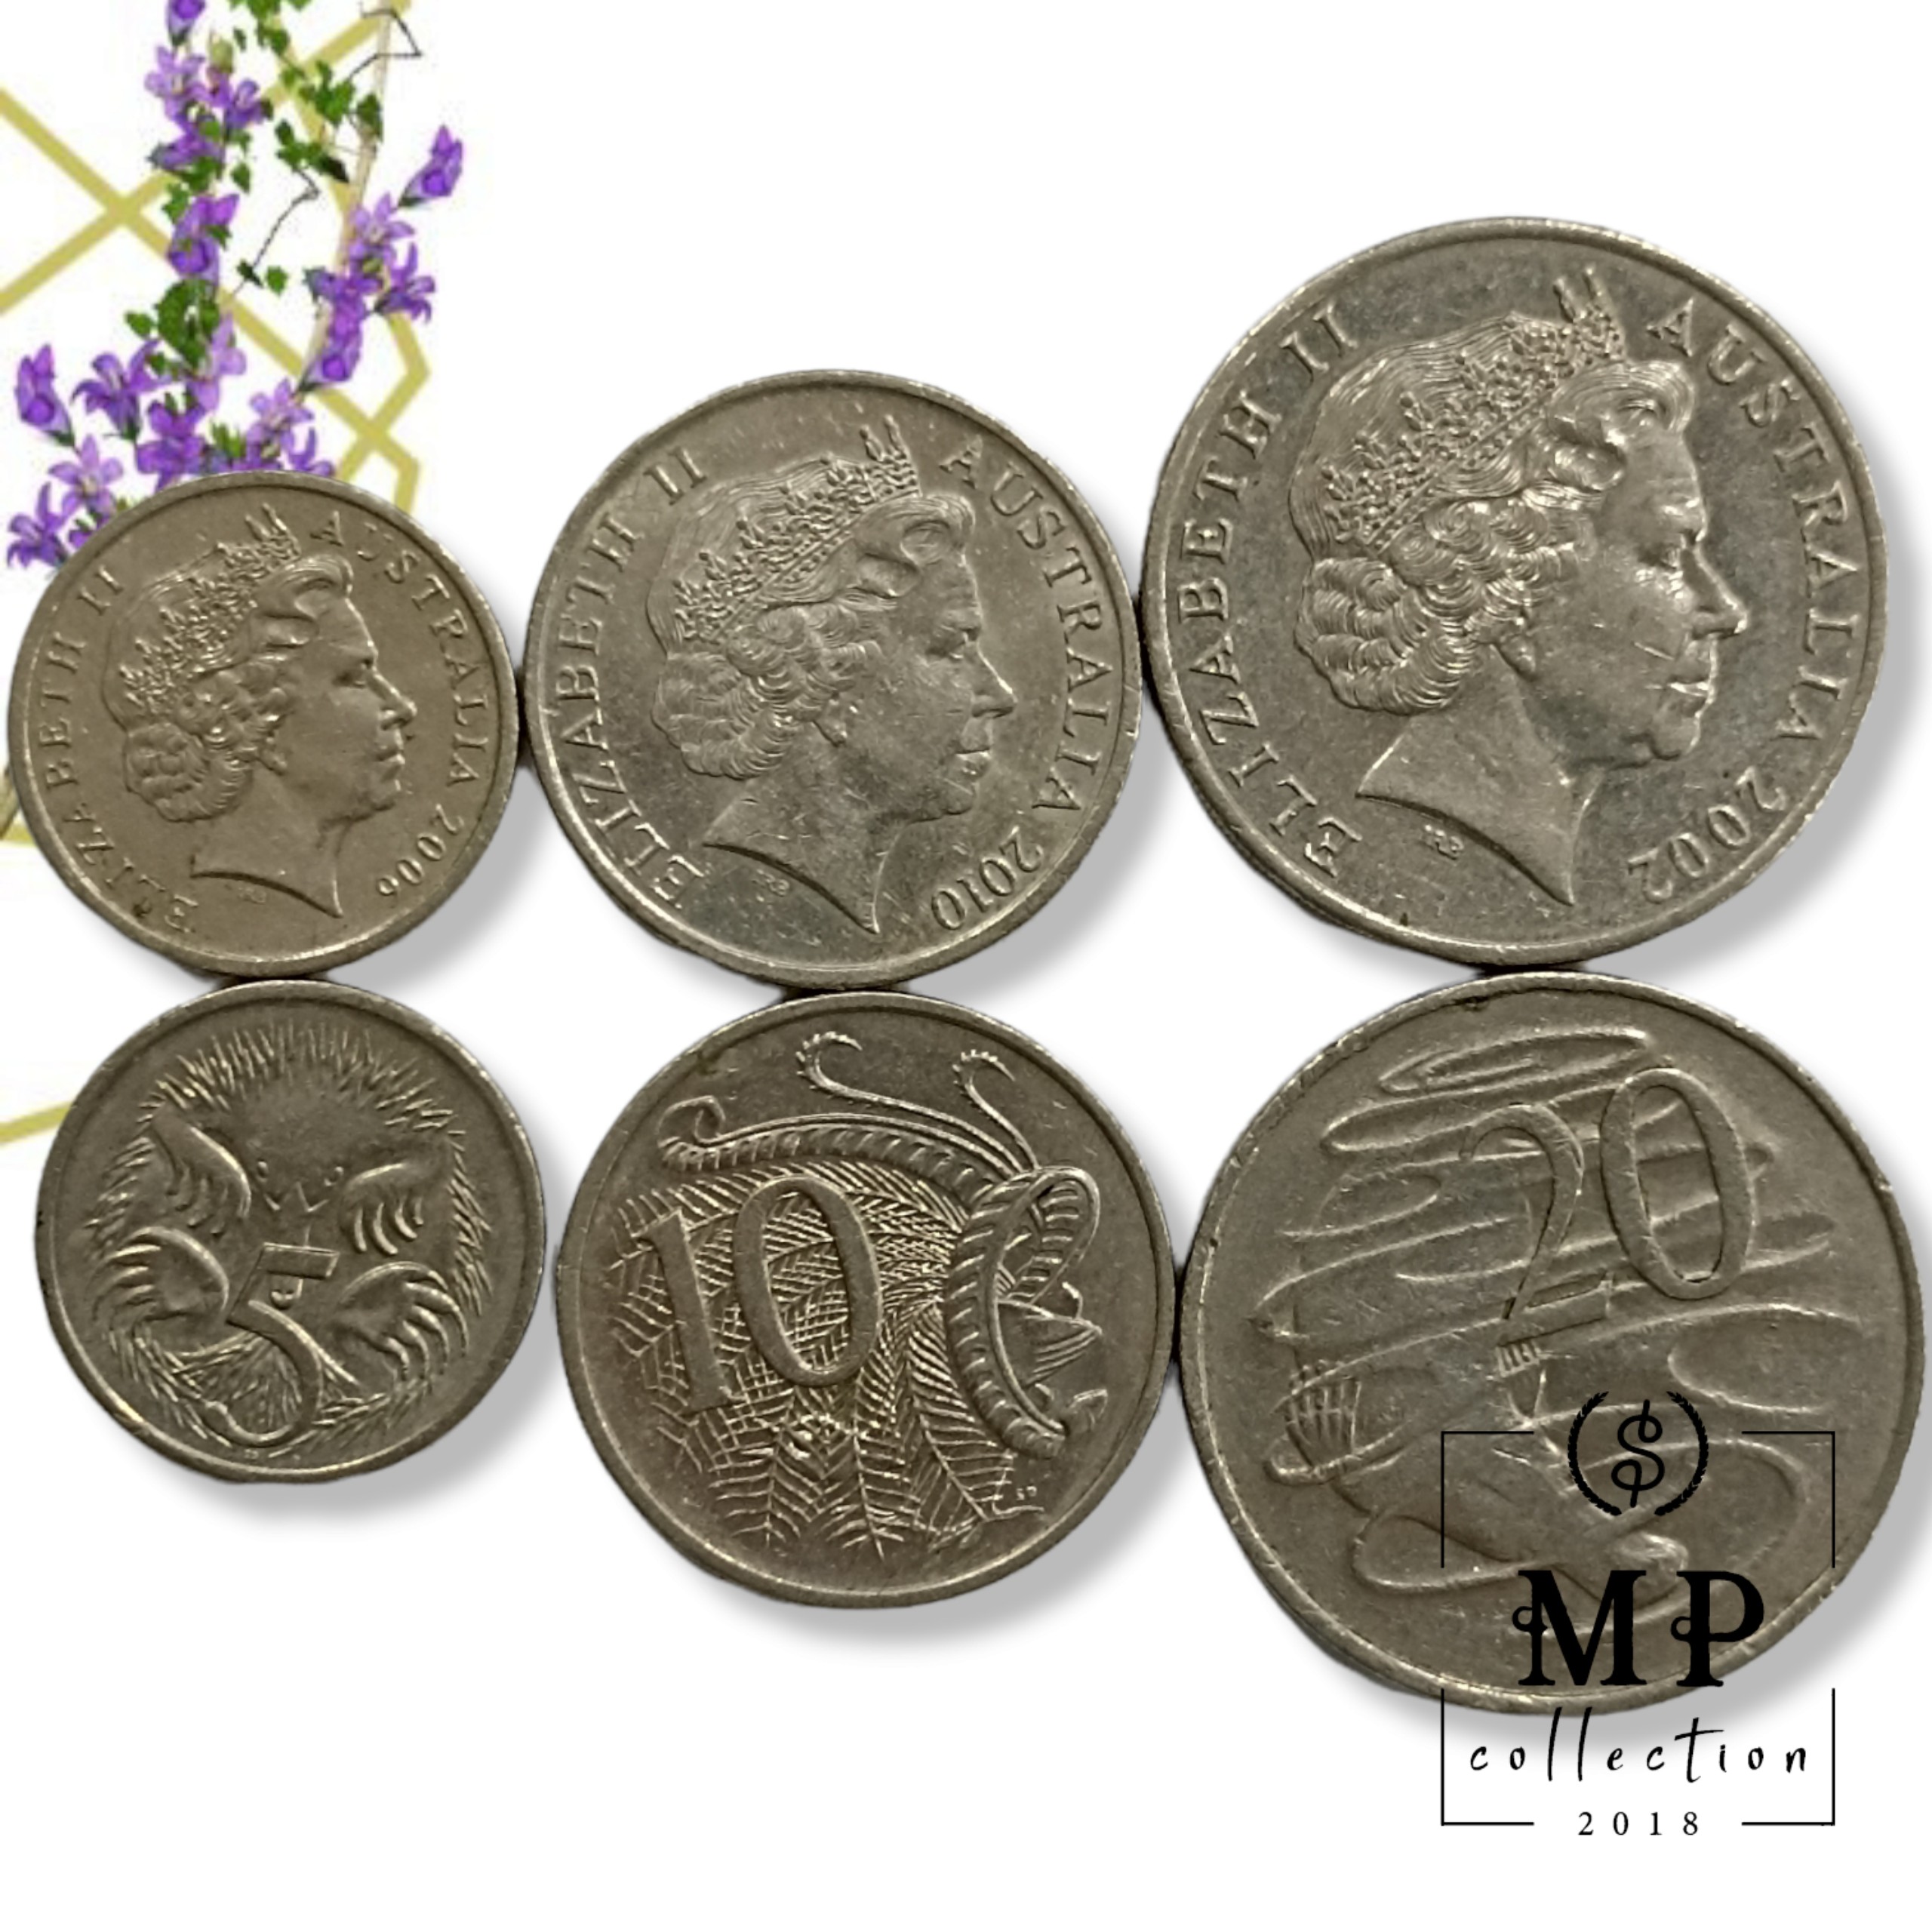 Bộ 3 Đồng xu Úc Australia khác nhau mệnh giá 5 10 20 cents các năm